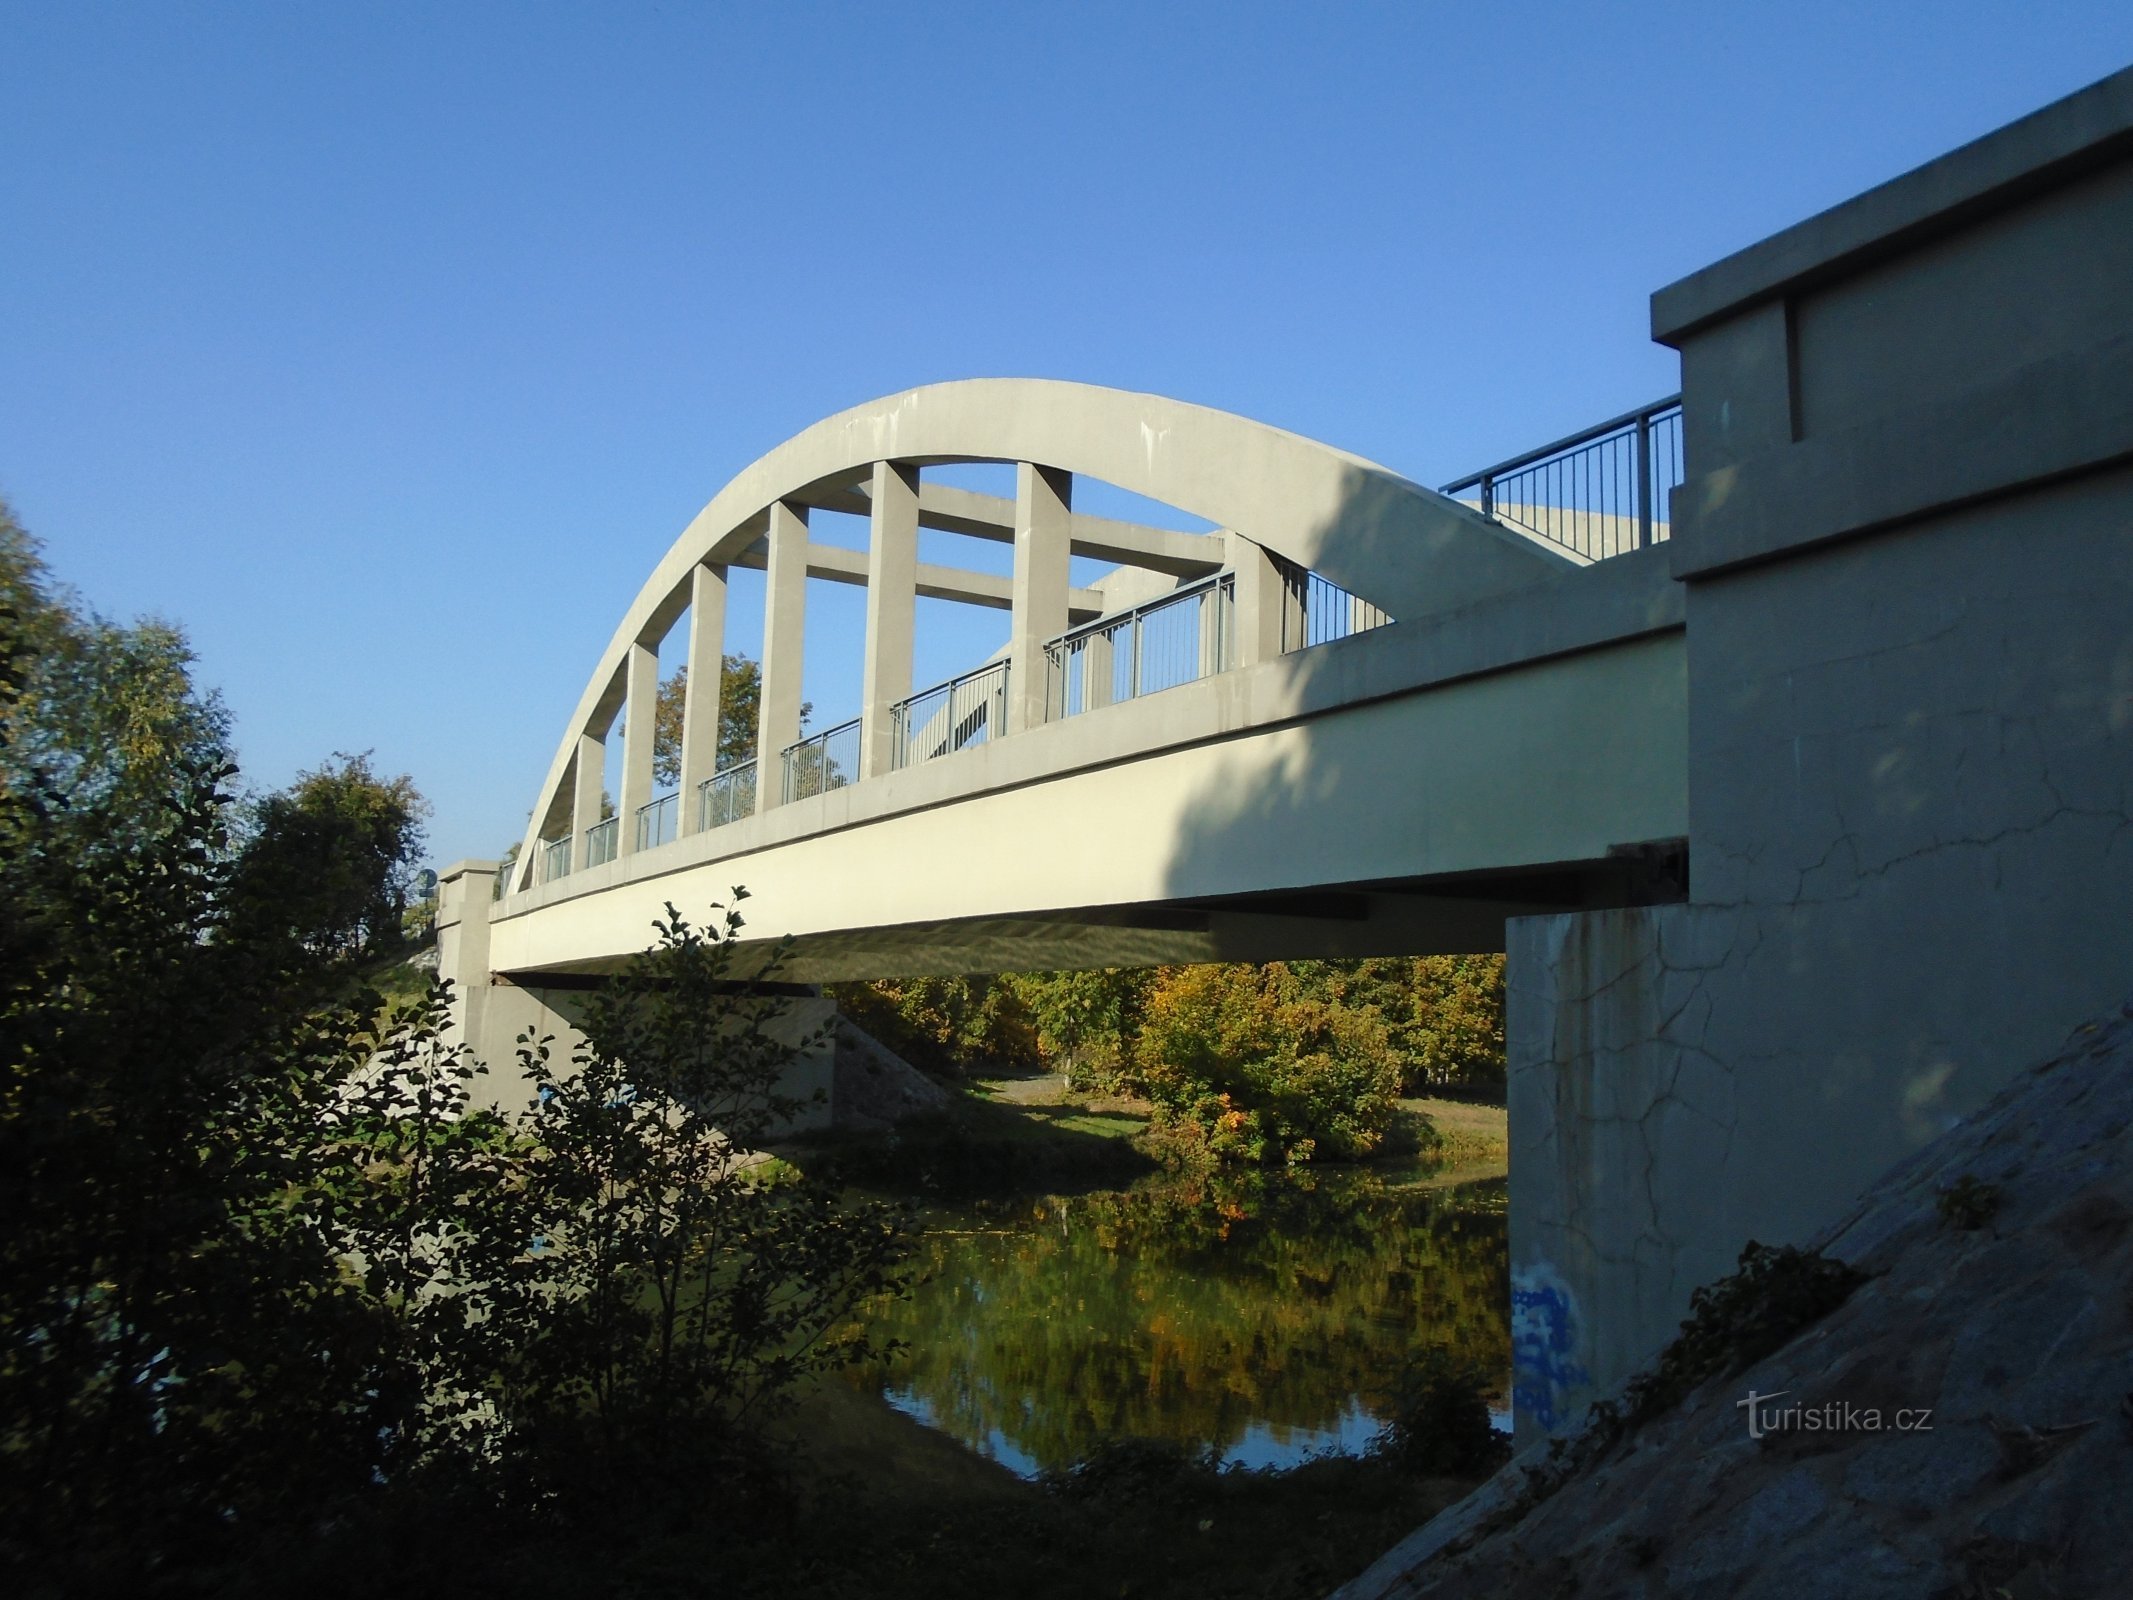 Pont sur l'Elbe (Černožice, 10.10.2018/XNUMX/XNUMX)